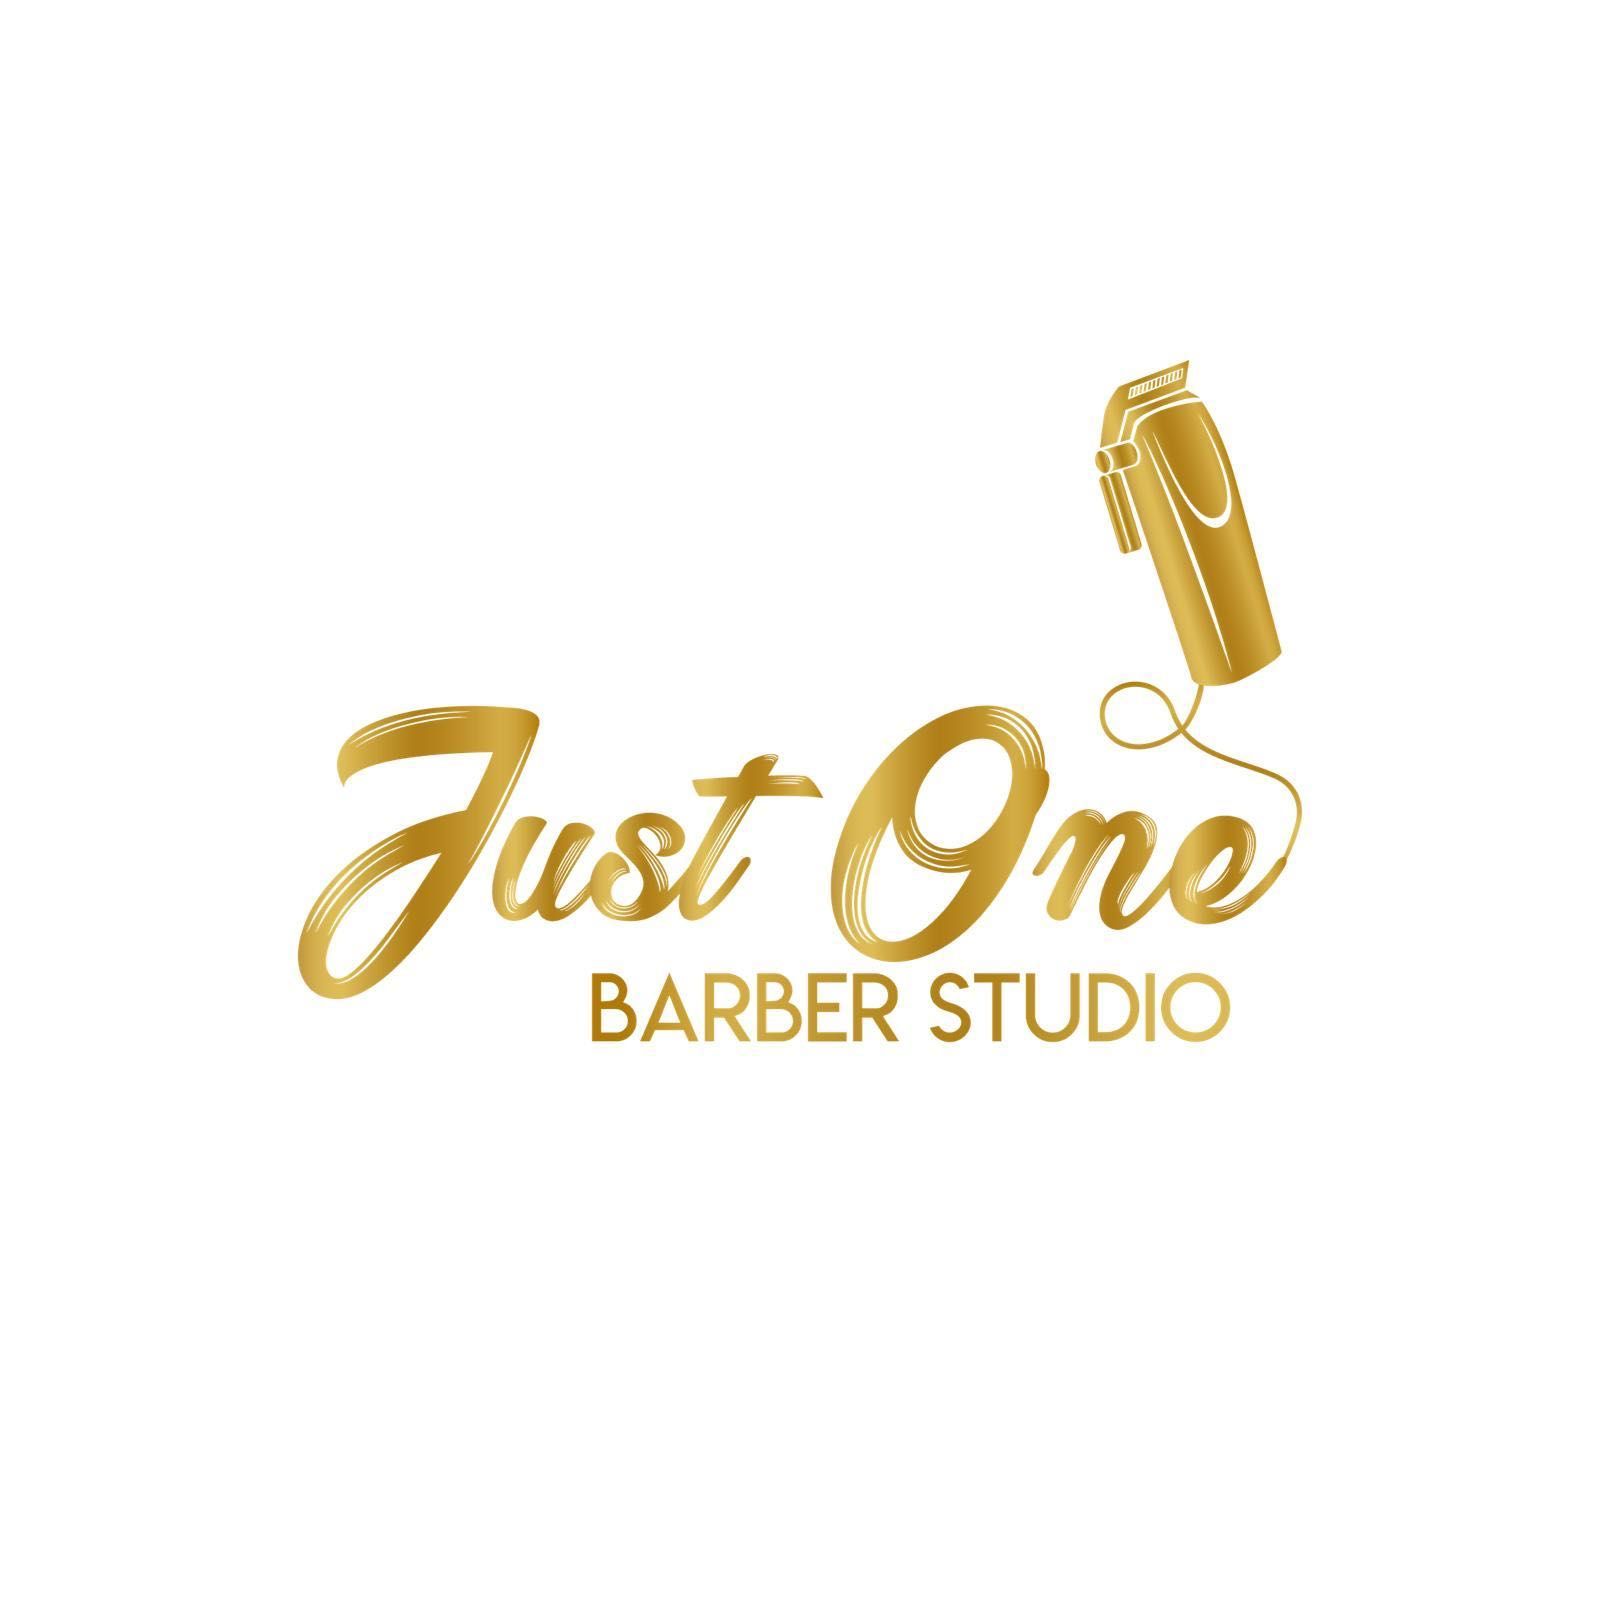 Just one barber studio, 1240 Broadway, Suit 3, Hanover, 17331